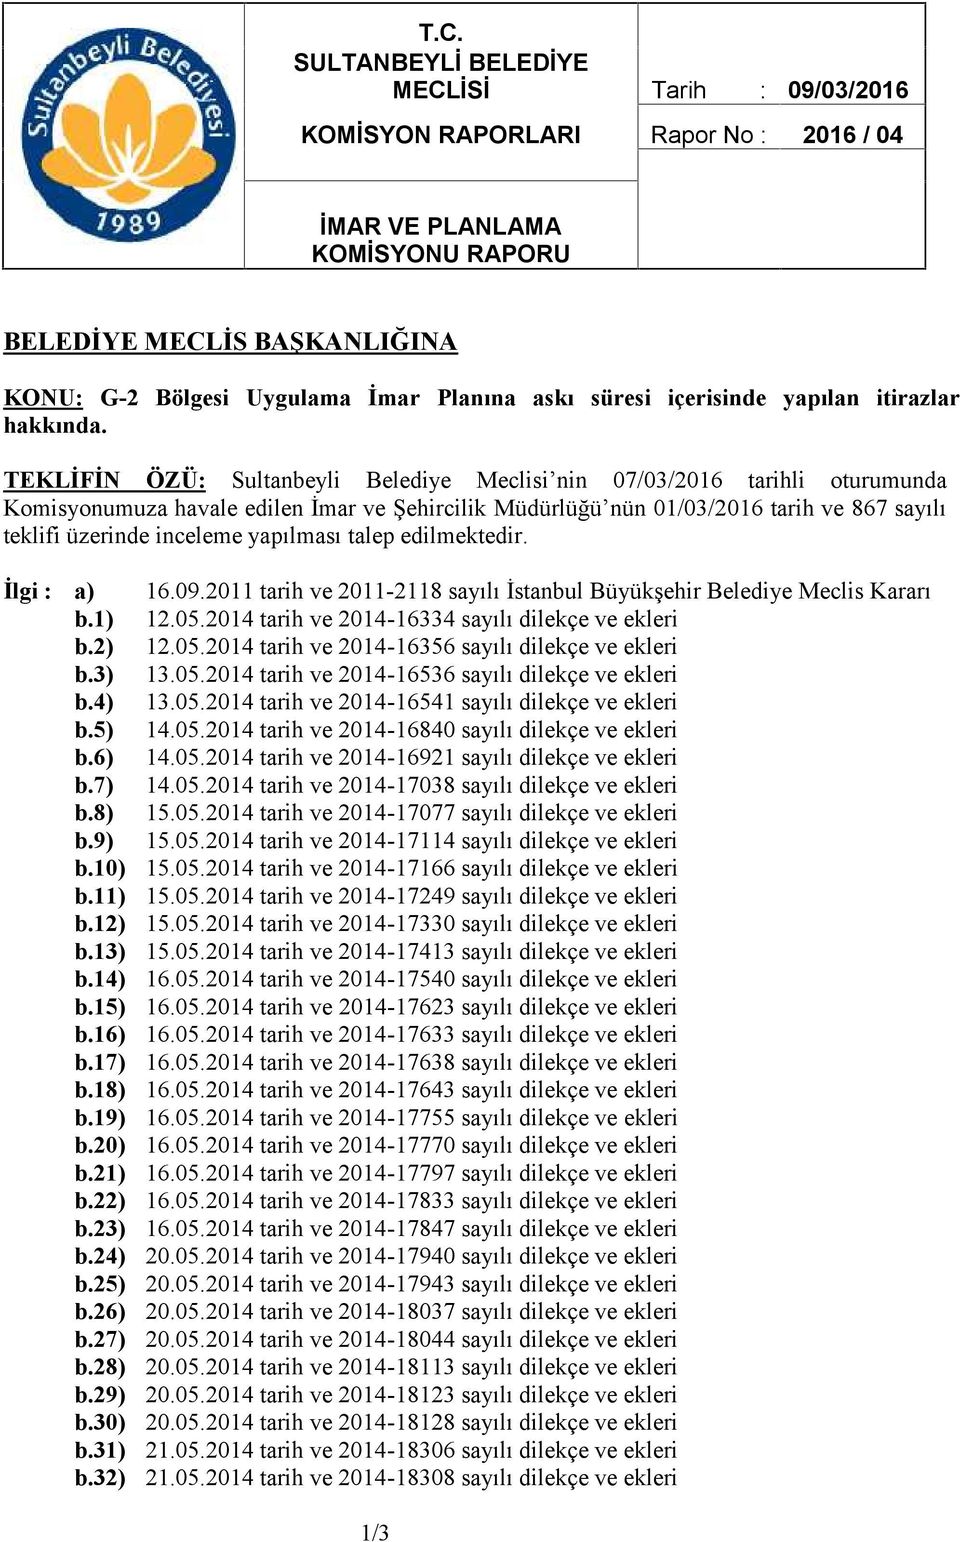 TEKLİFİN ÖZÜ: Sultanbeyli Belediye Meclisi nin 07/03/2016 tarihli oturumunda Komisyonumuza havale edilen İmar ve Şehircilik Müdürlüğü nün 01/03/2016 tarih ve 867 sayılı teklifi üzerinde inceleme